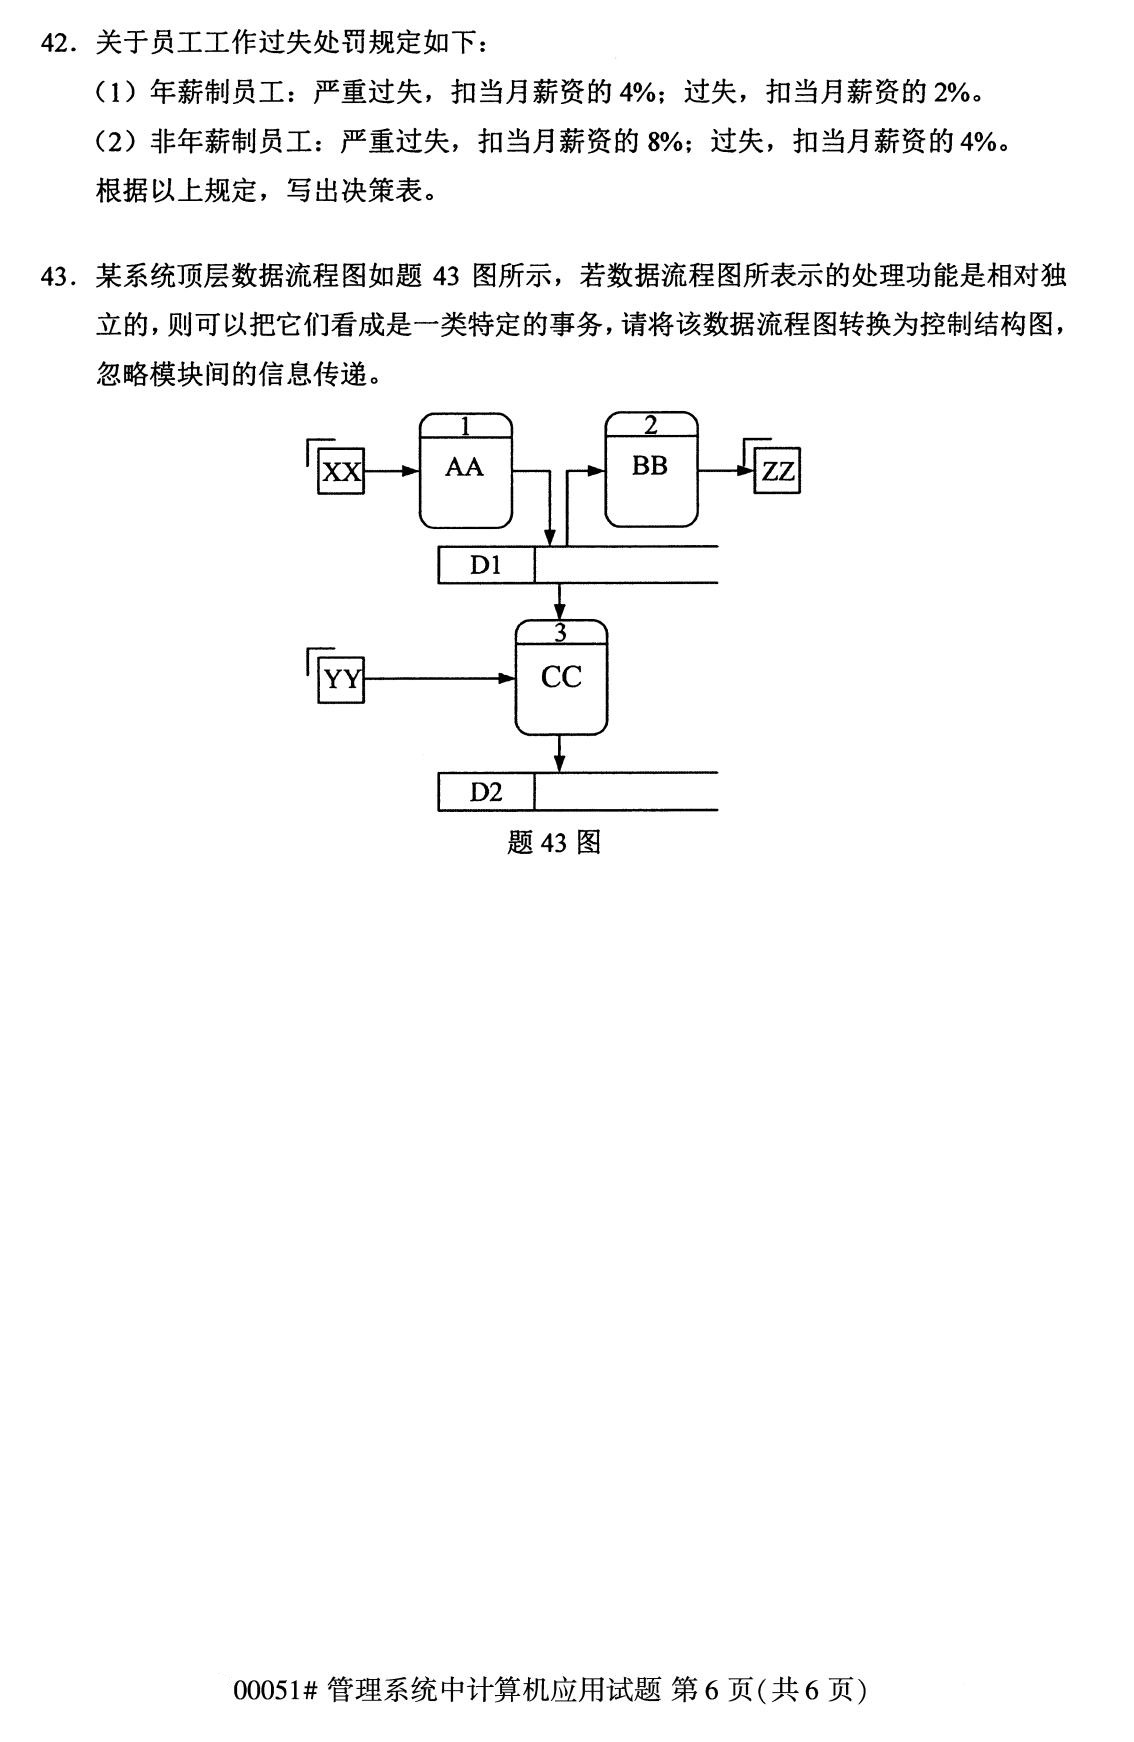 2020年8月福建省自学考试本科管理系统中计算机应用真题(图6)